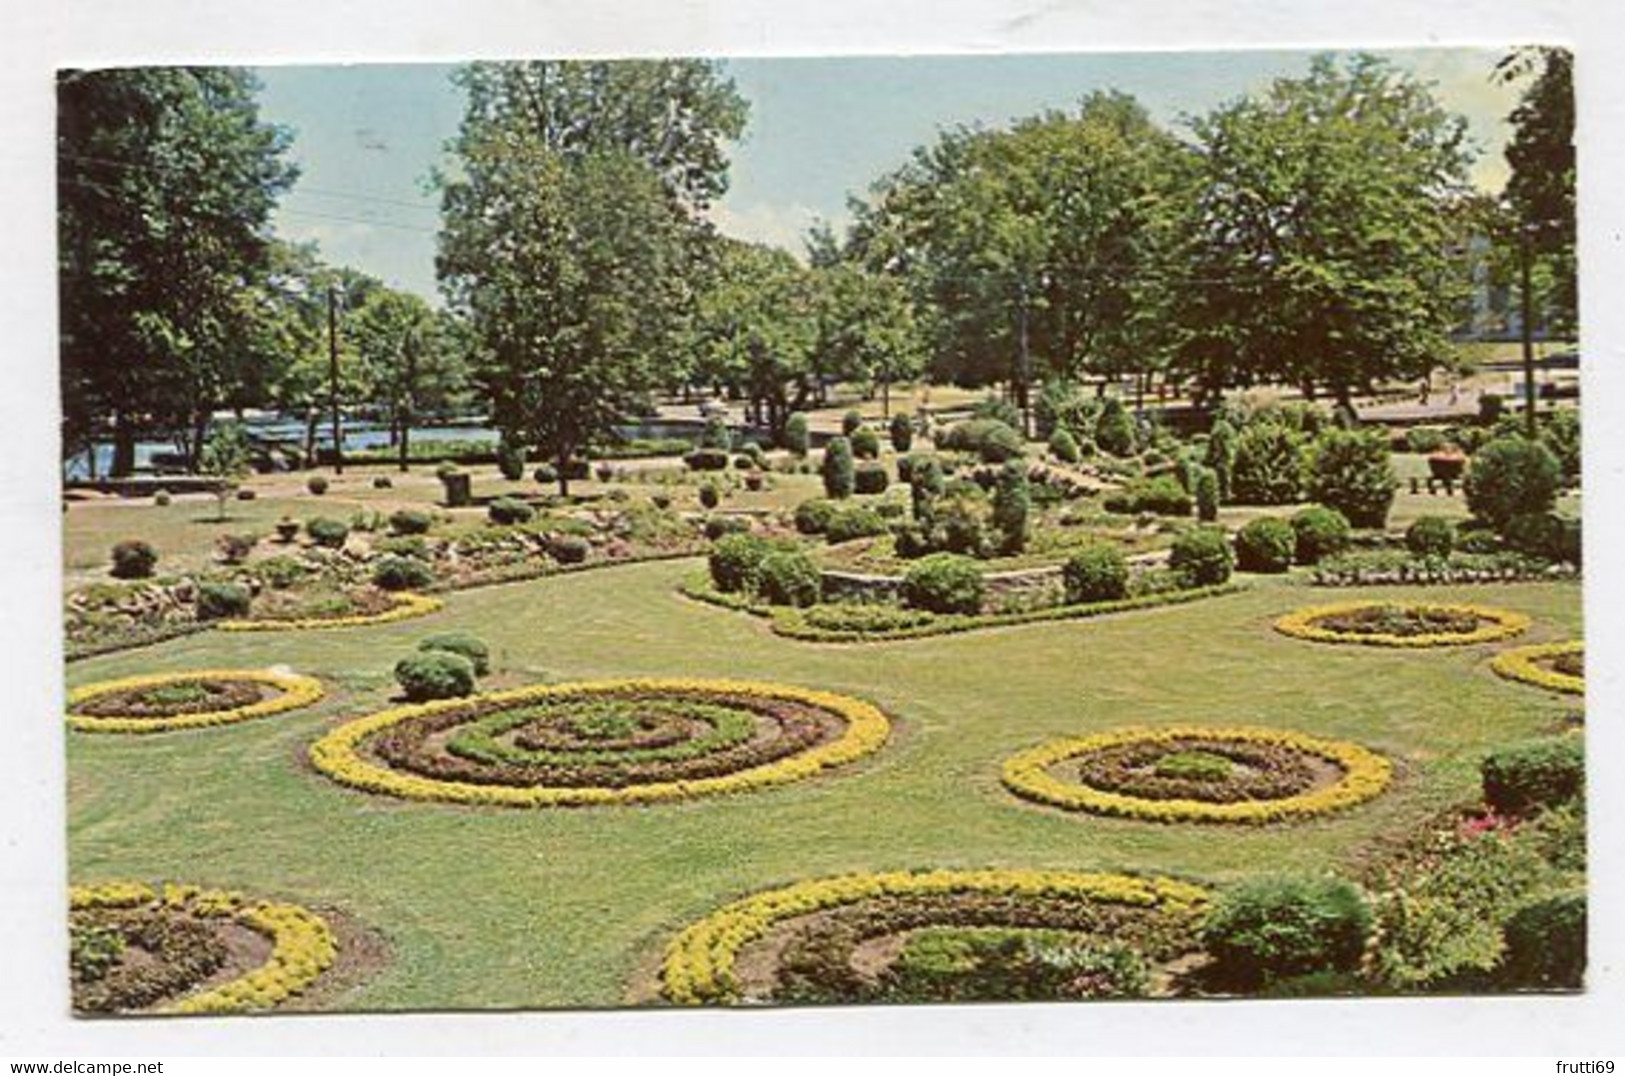 AK 107184 USA - Tennessee - Nashville - Centennial Park - Flower Beds - Nashville